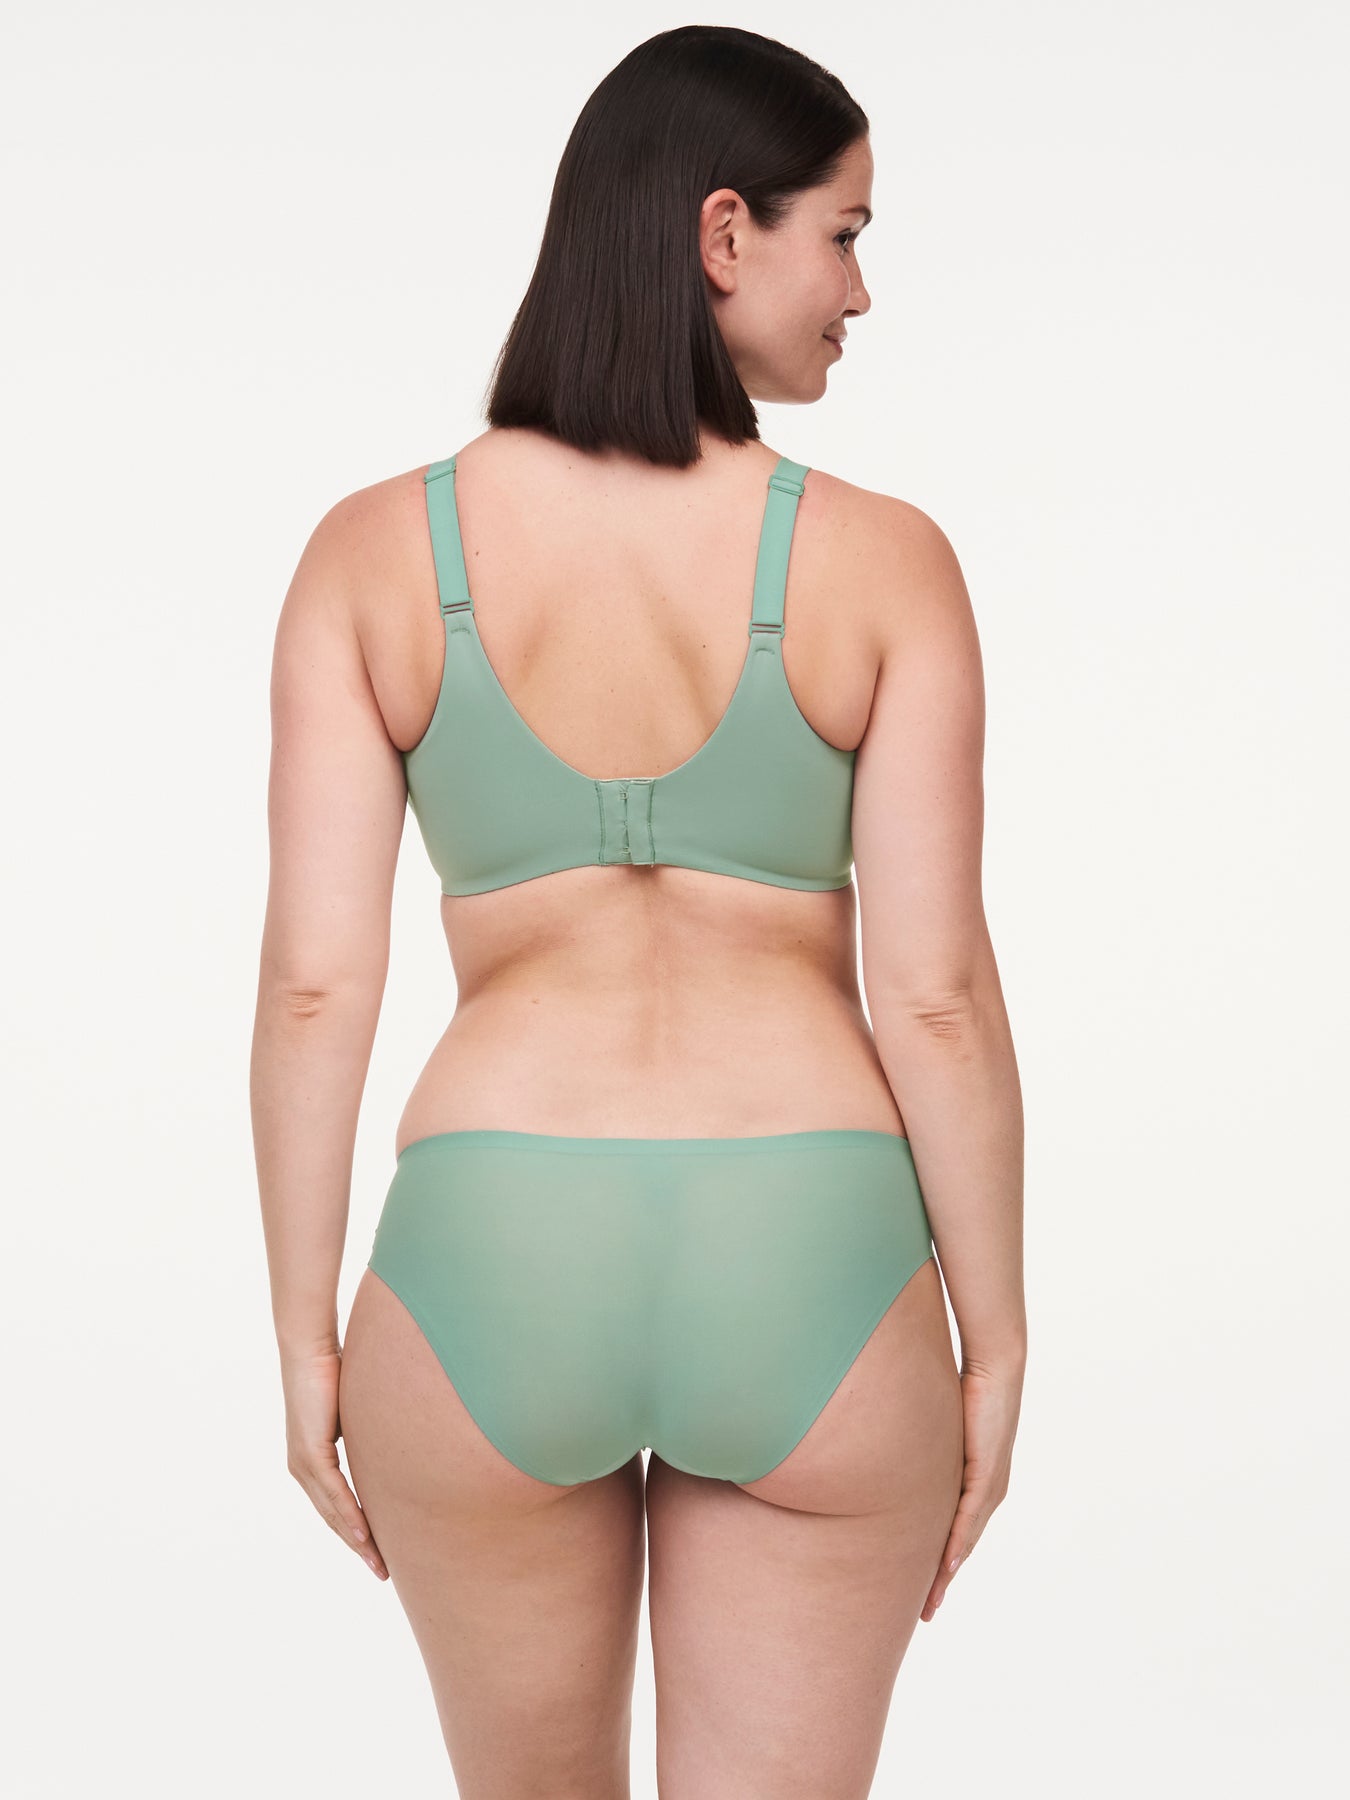 Norah Molded Bra - OC Green – Sheer Essentials Lingerie & Swimwear